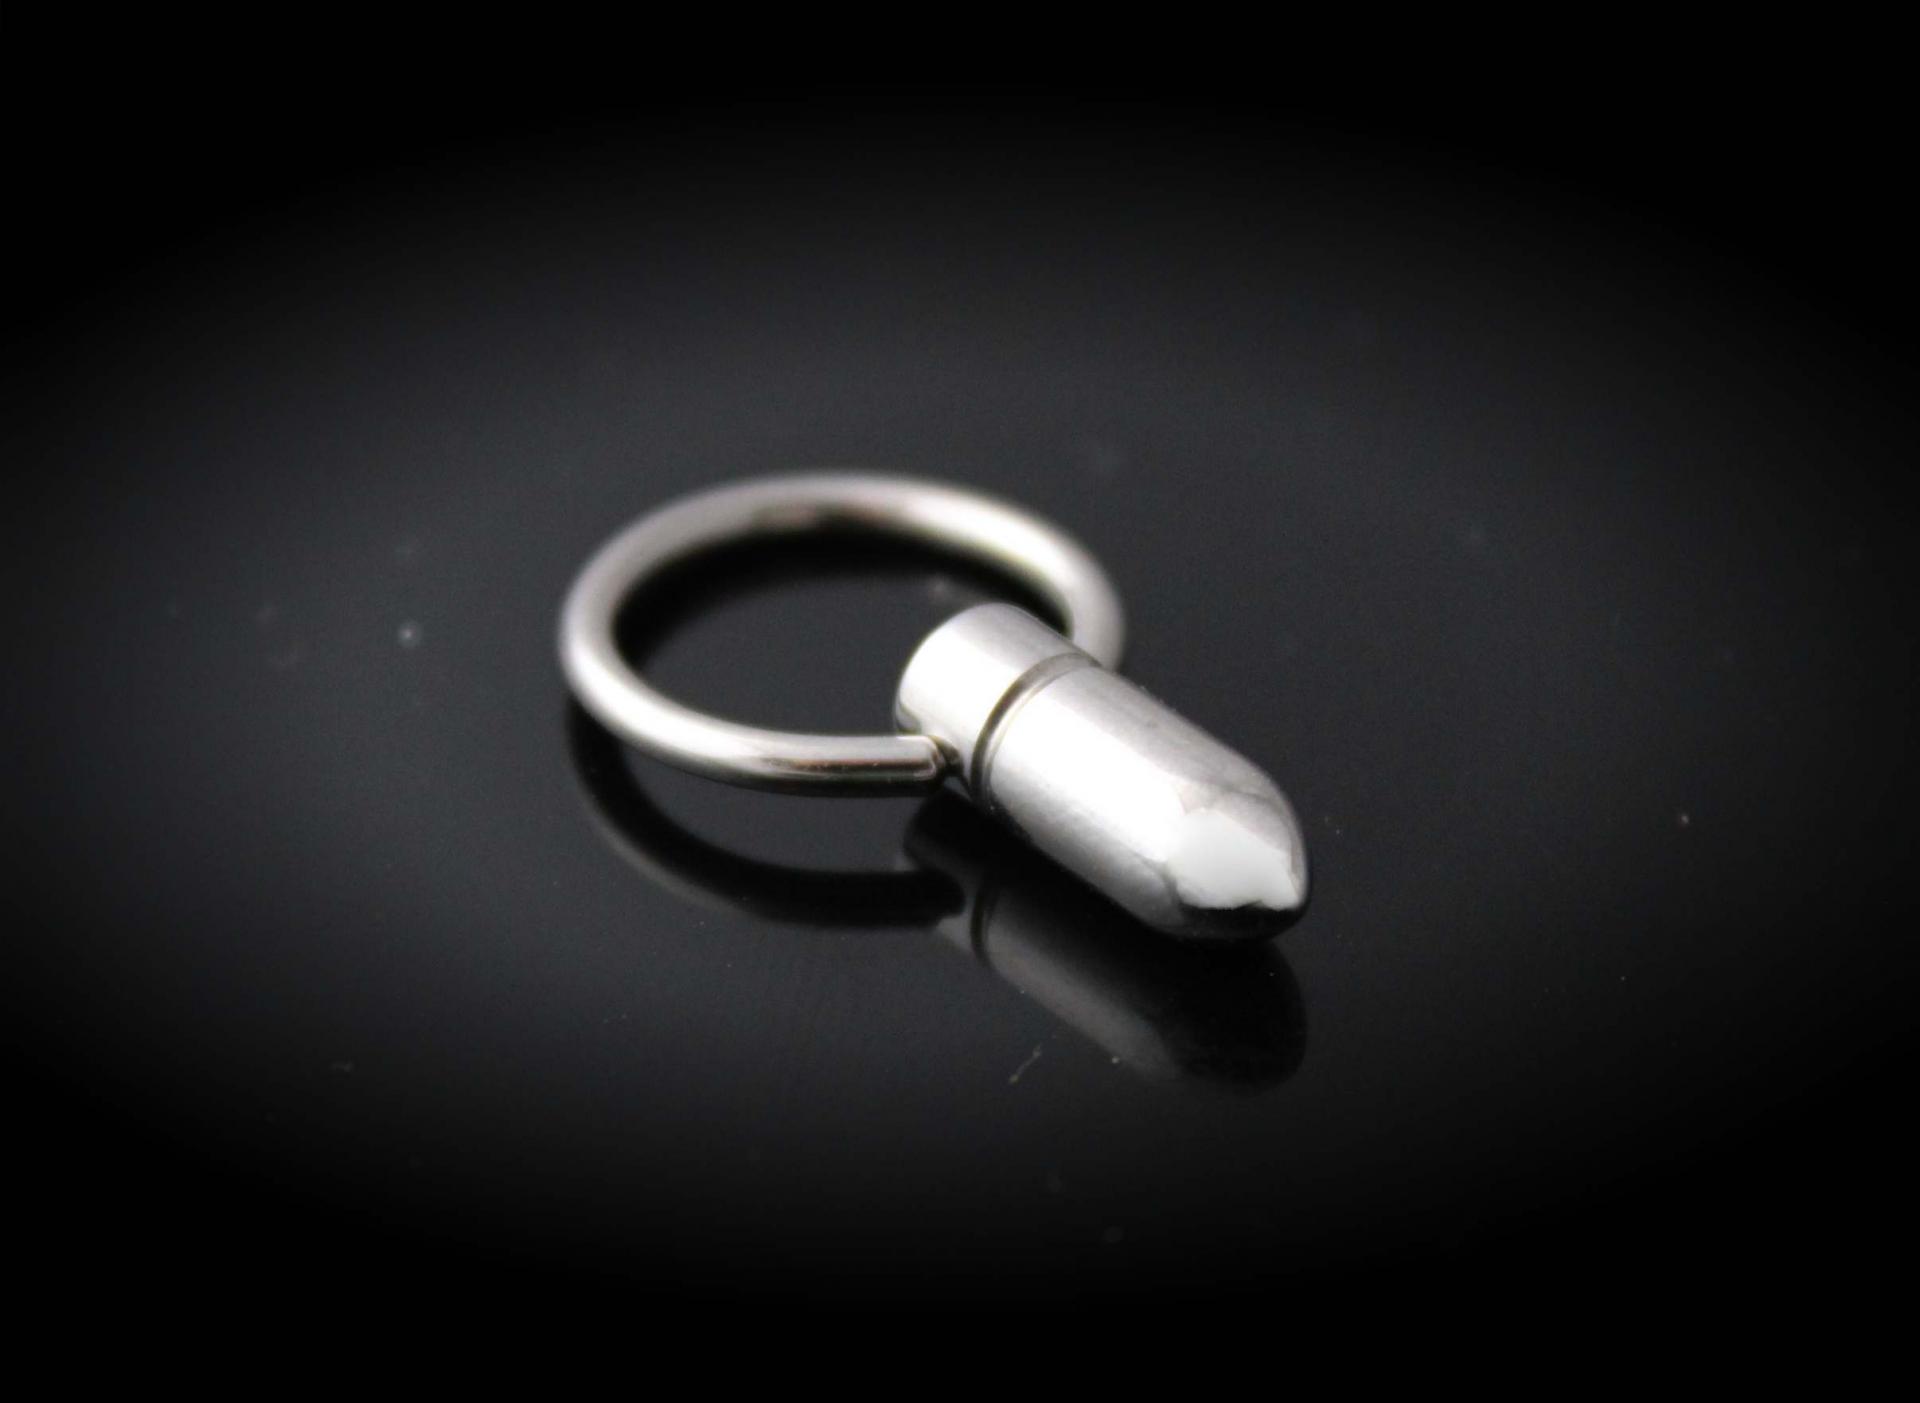 BCR Bullet Design Captive Ring